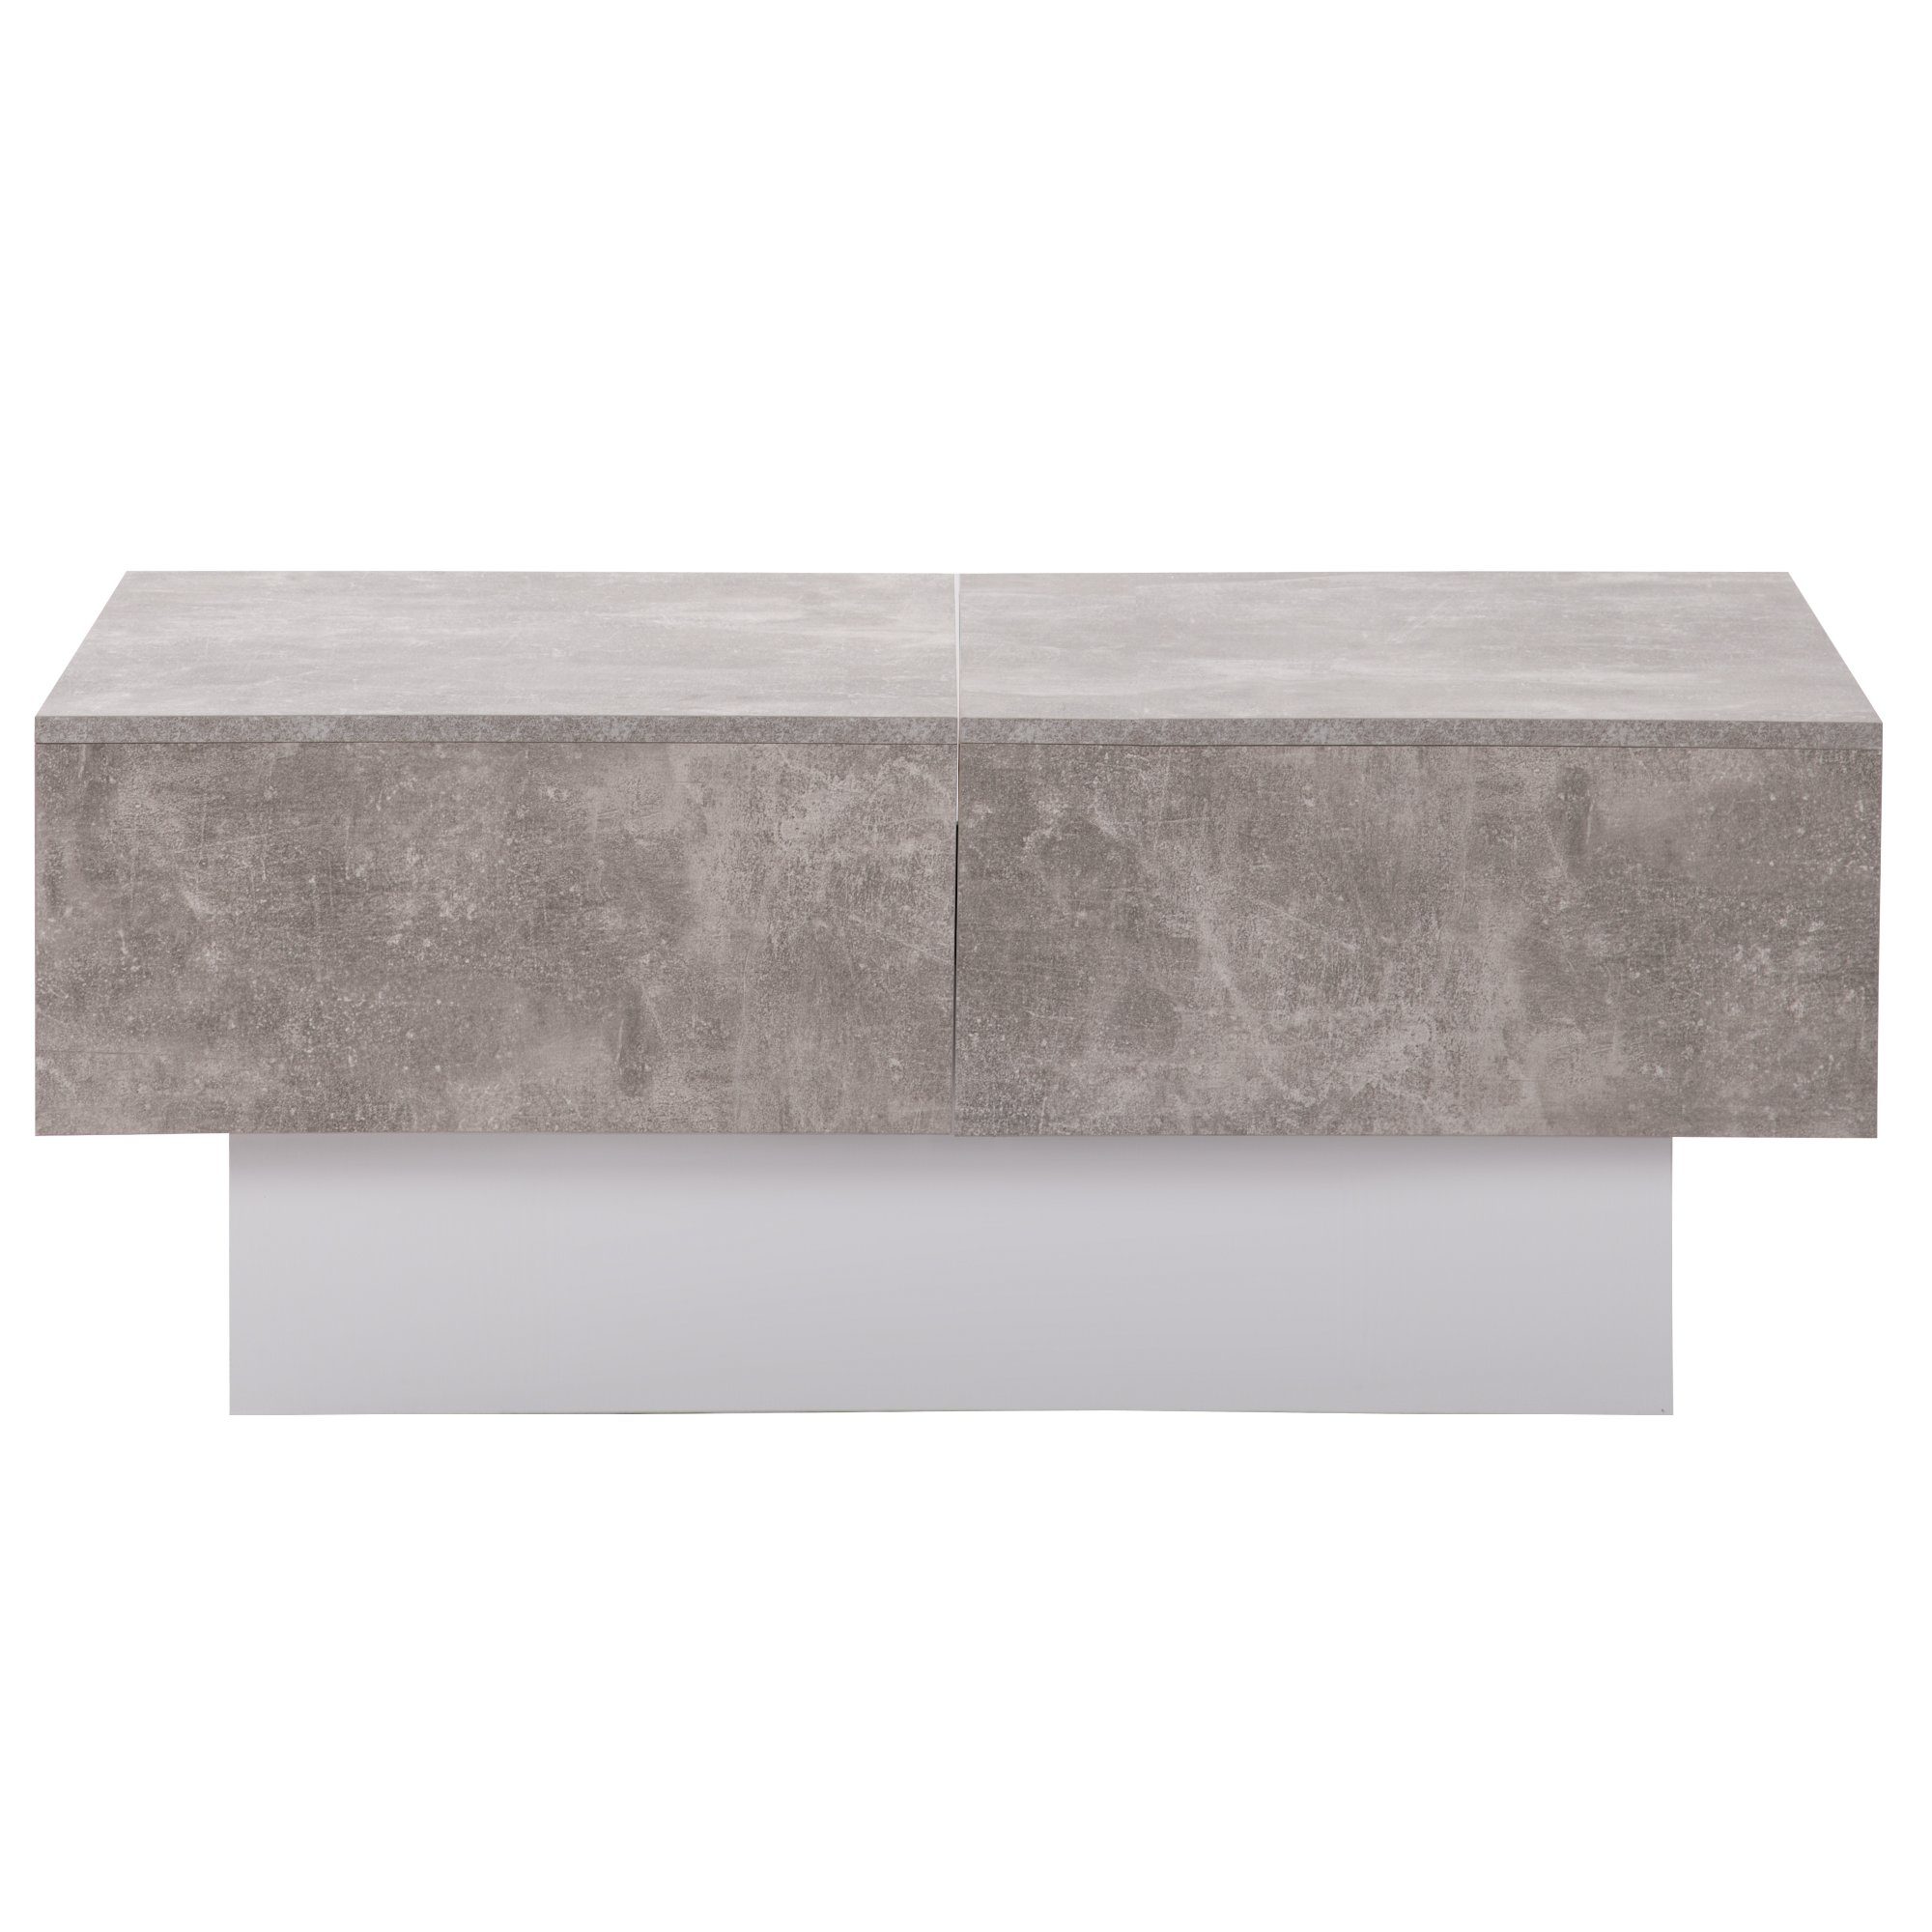 GLIESE Couchtisch Tisch Tisch mit und ausziehbarem Grau Stauraum